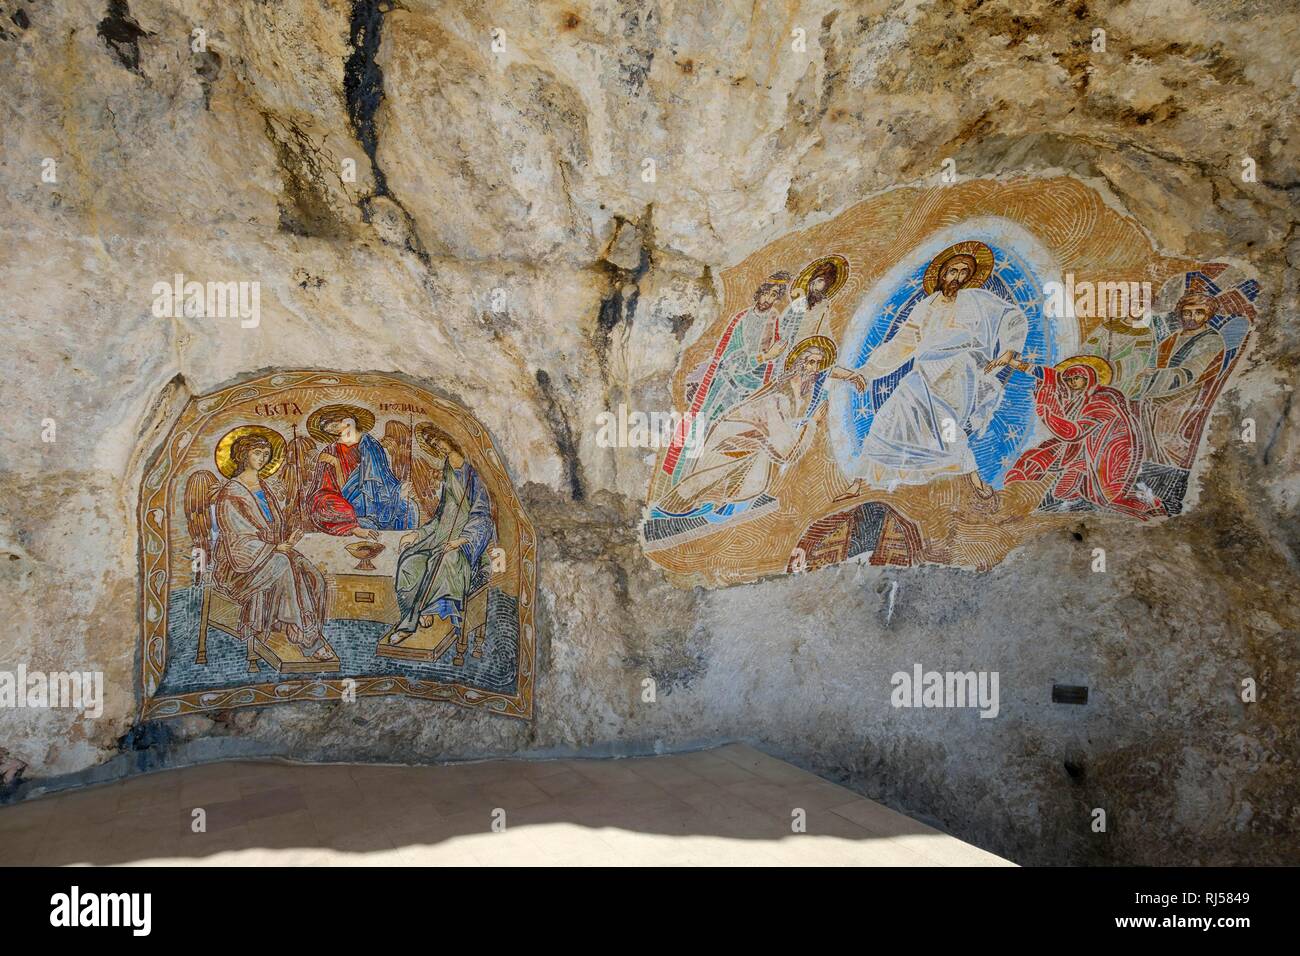 Religiöse Mosaike auf Fels, Serbisch-orthodoxe Kloster Ostrog, Danilovgrad Provinz, Montenegro Stockfoto